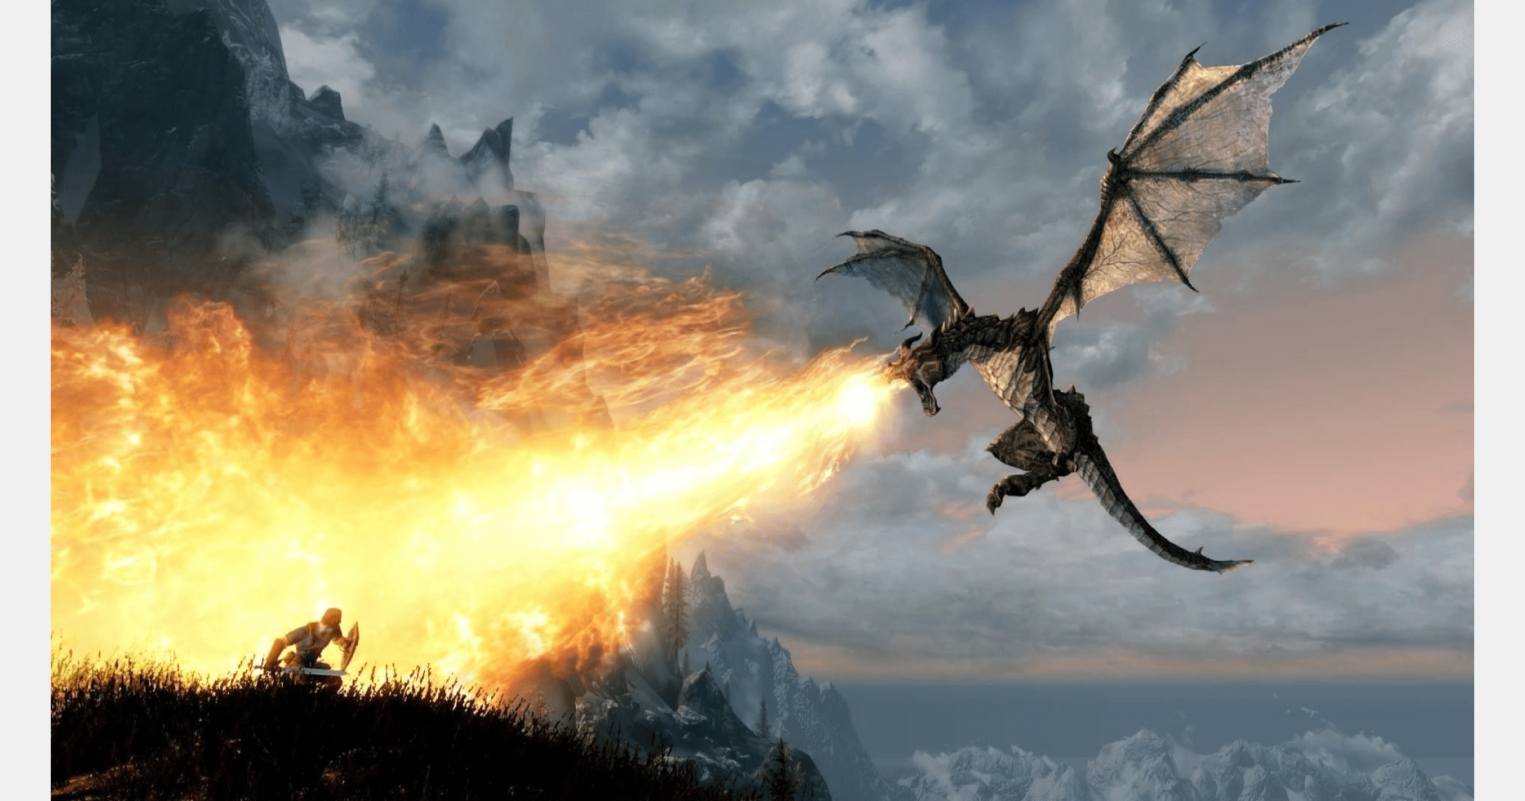 Скриншот из игры «The Elder Scrolls V: Skyrim» / 2011 год.